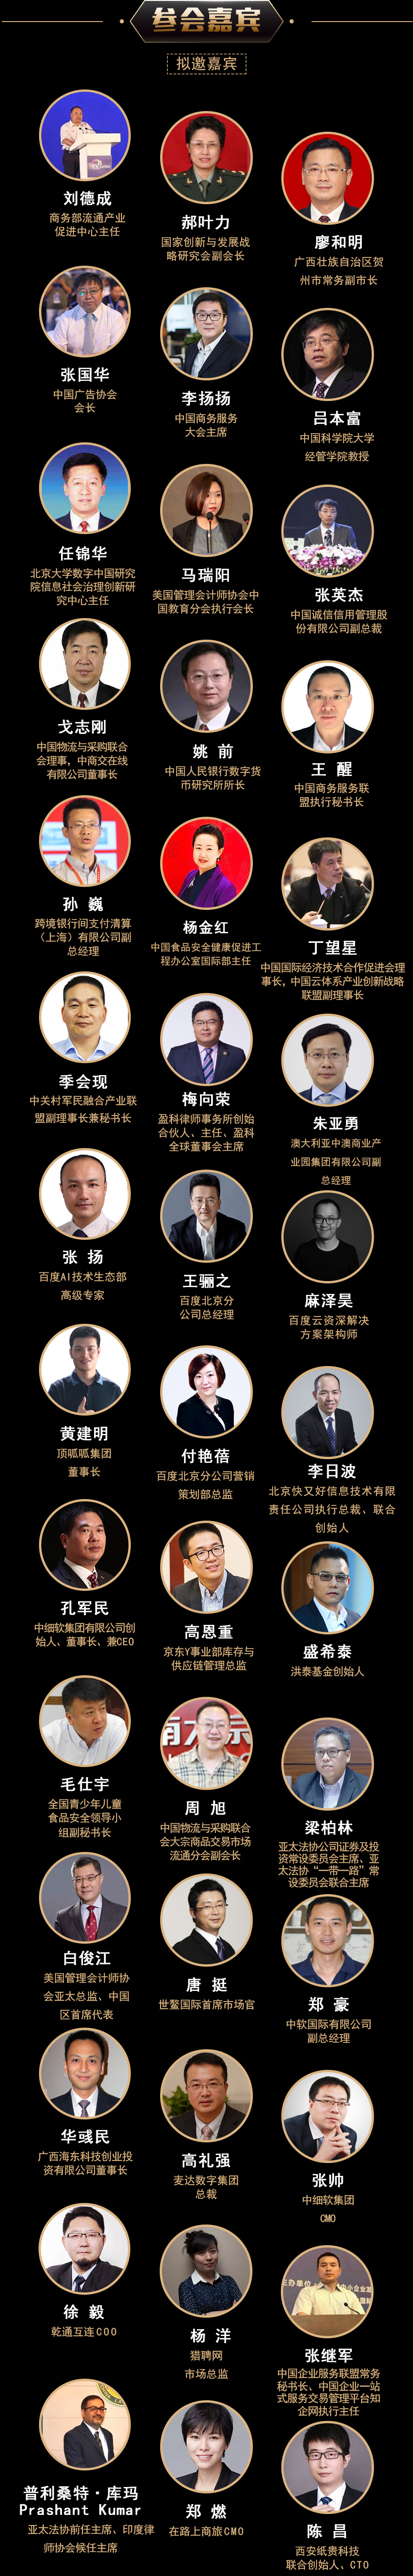 商务世界·2018中国商务服务大会